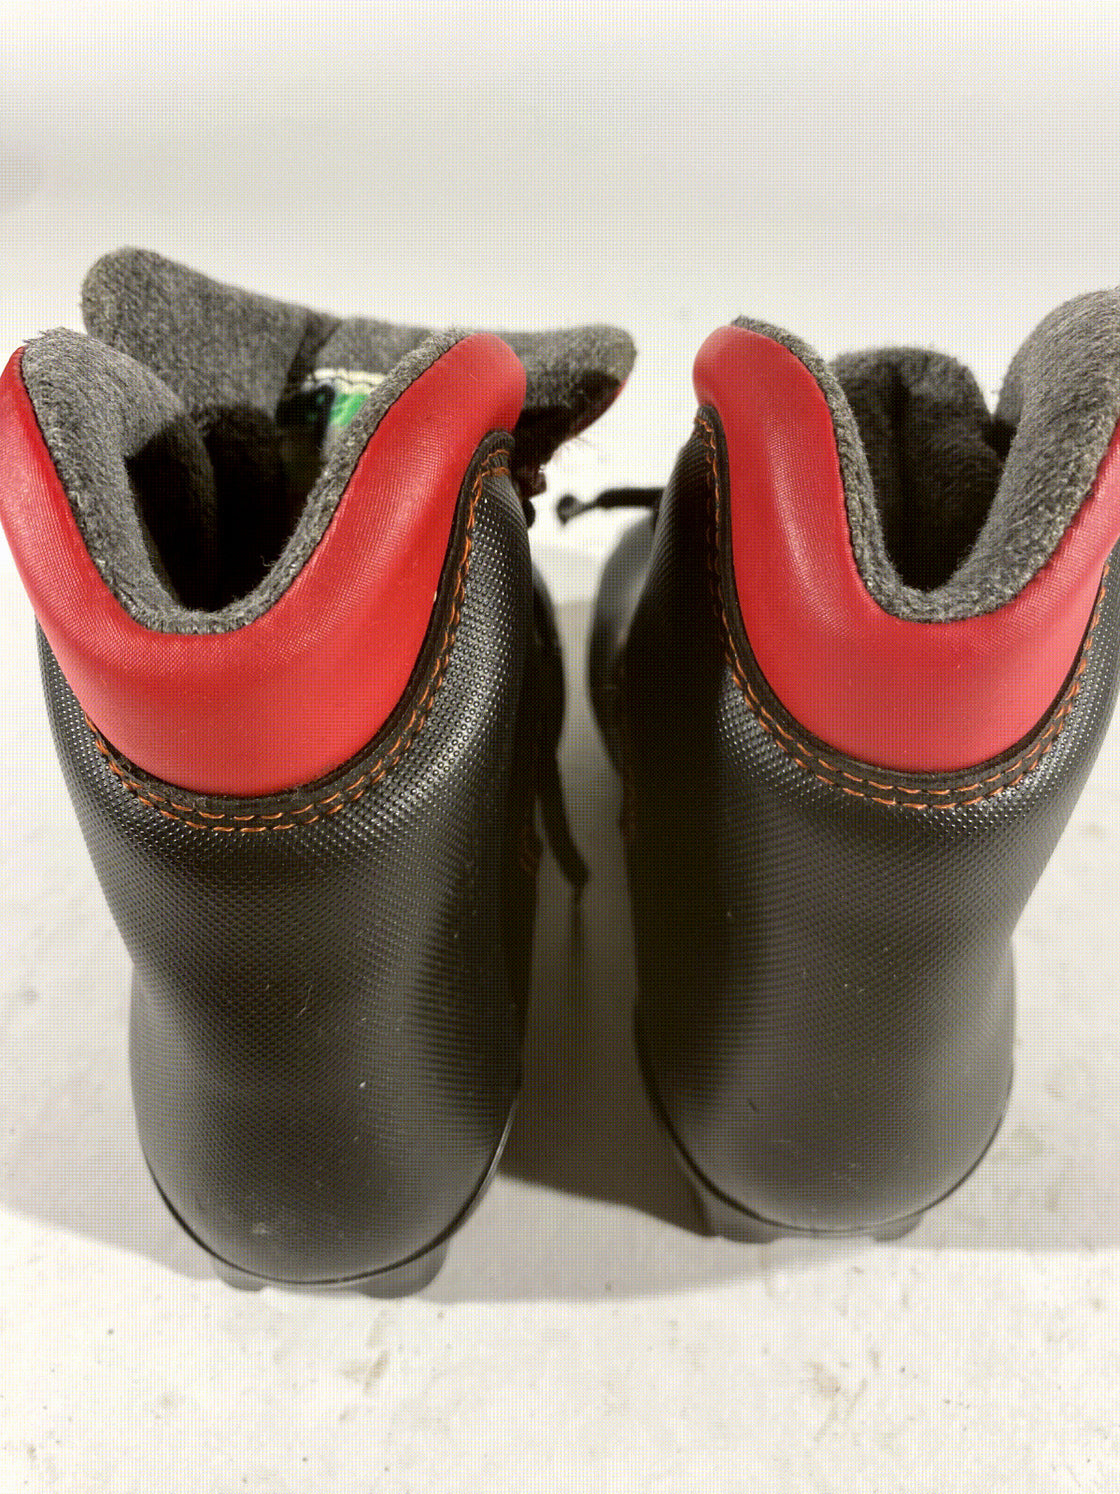 Salomon Kids Nordic Cross Country Ski Boots Size EU29 US11K SNS Profil S119